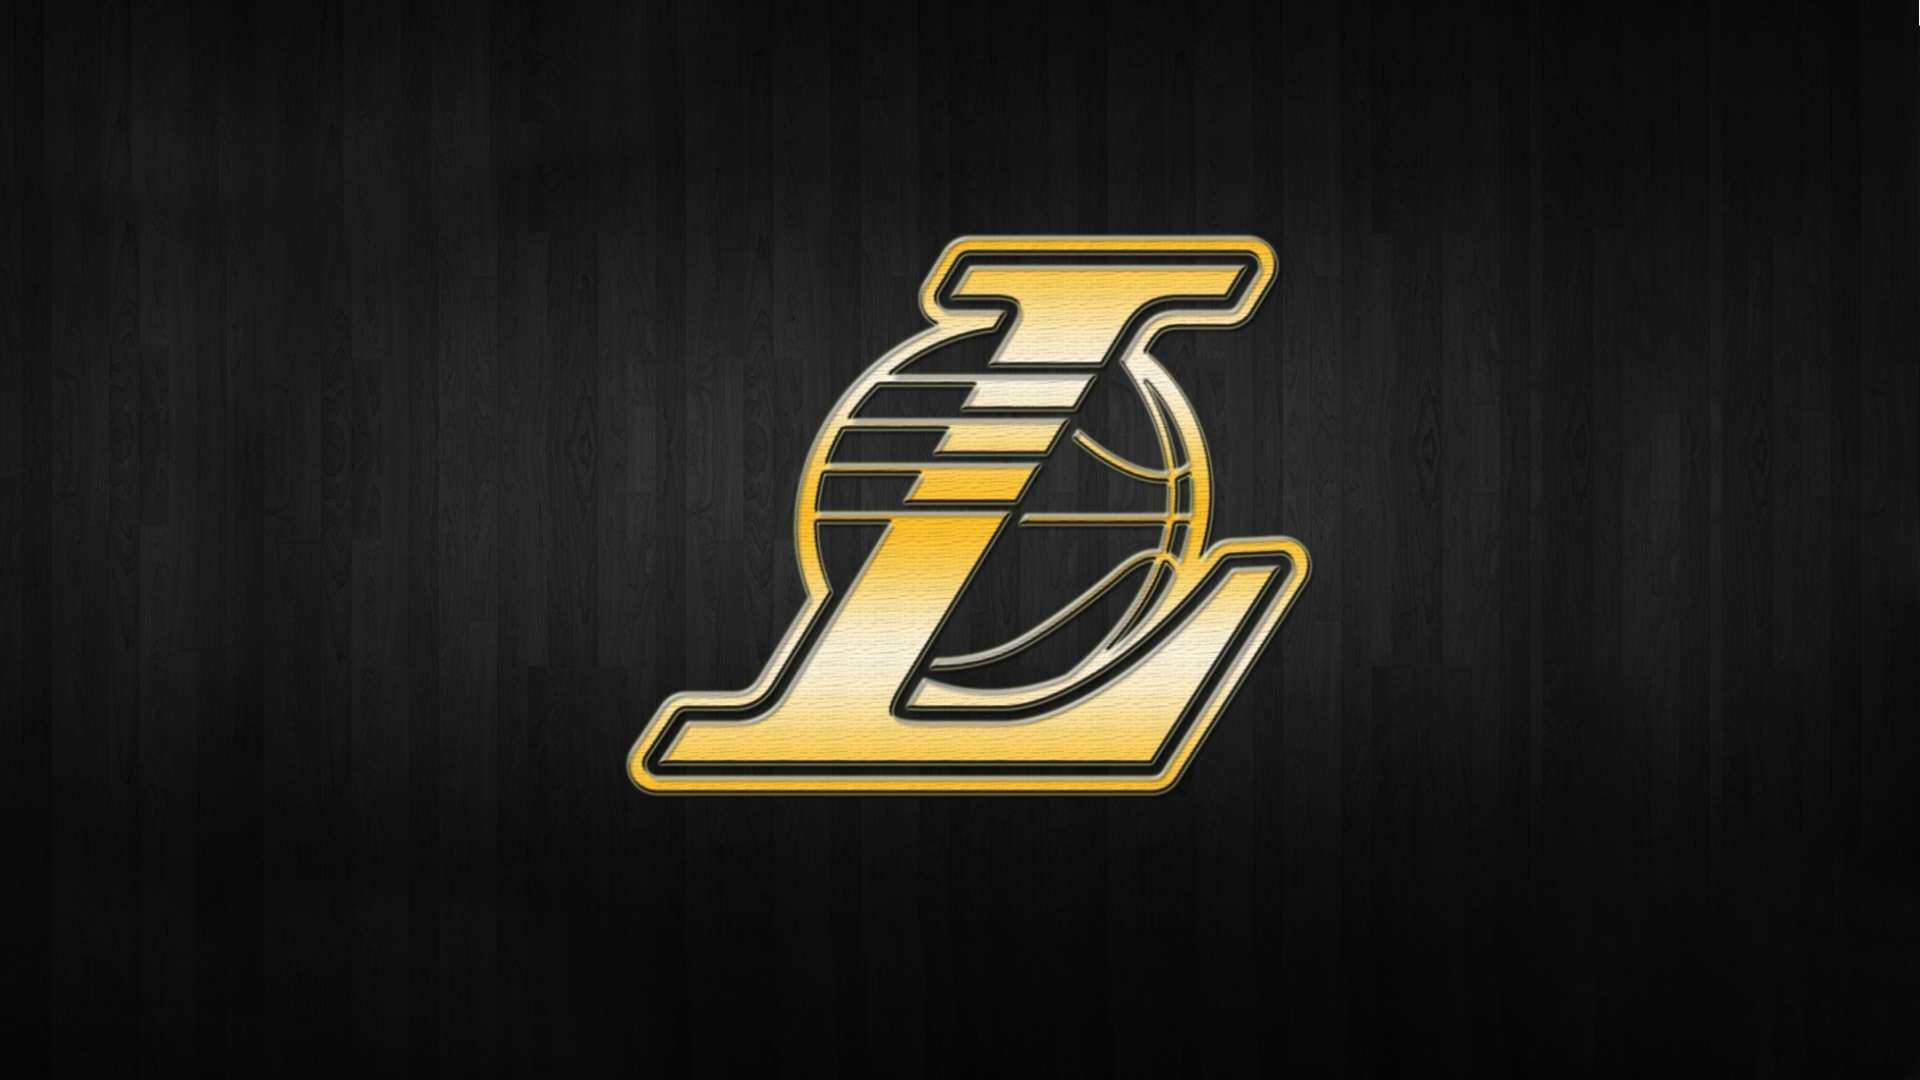  Lakers Nba Logo Background Gold Hd Wallpaper 1080p HDWallWidecom